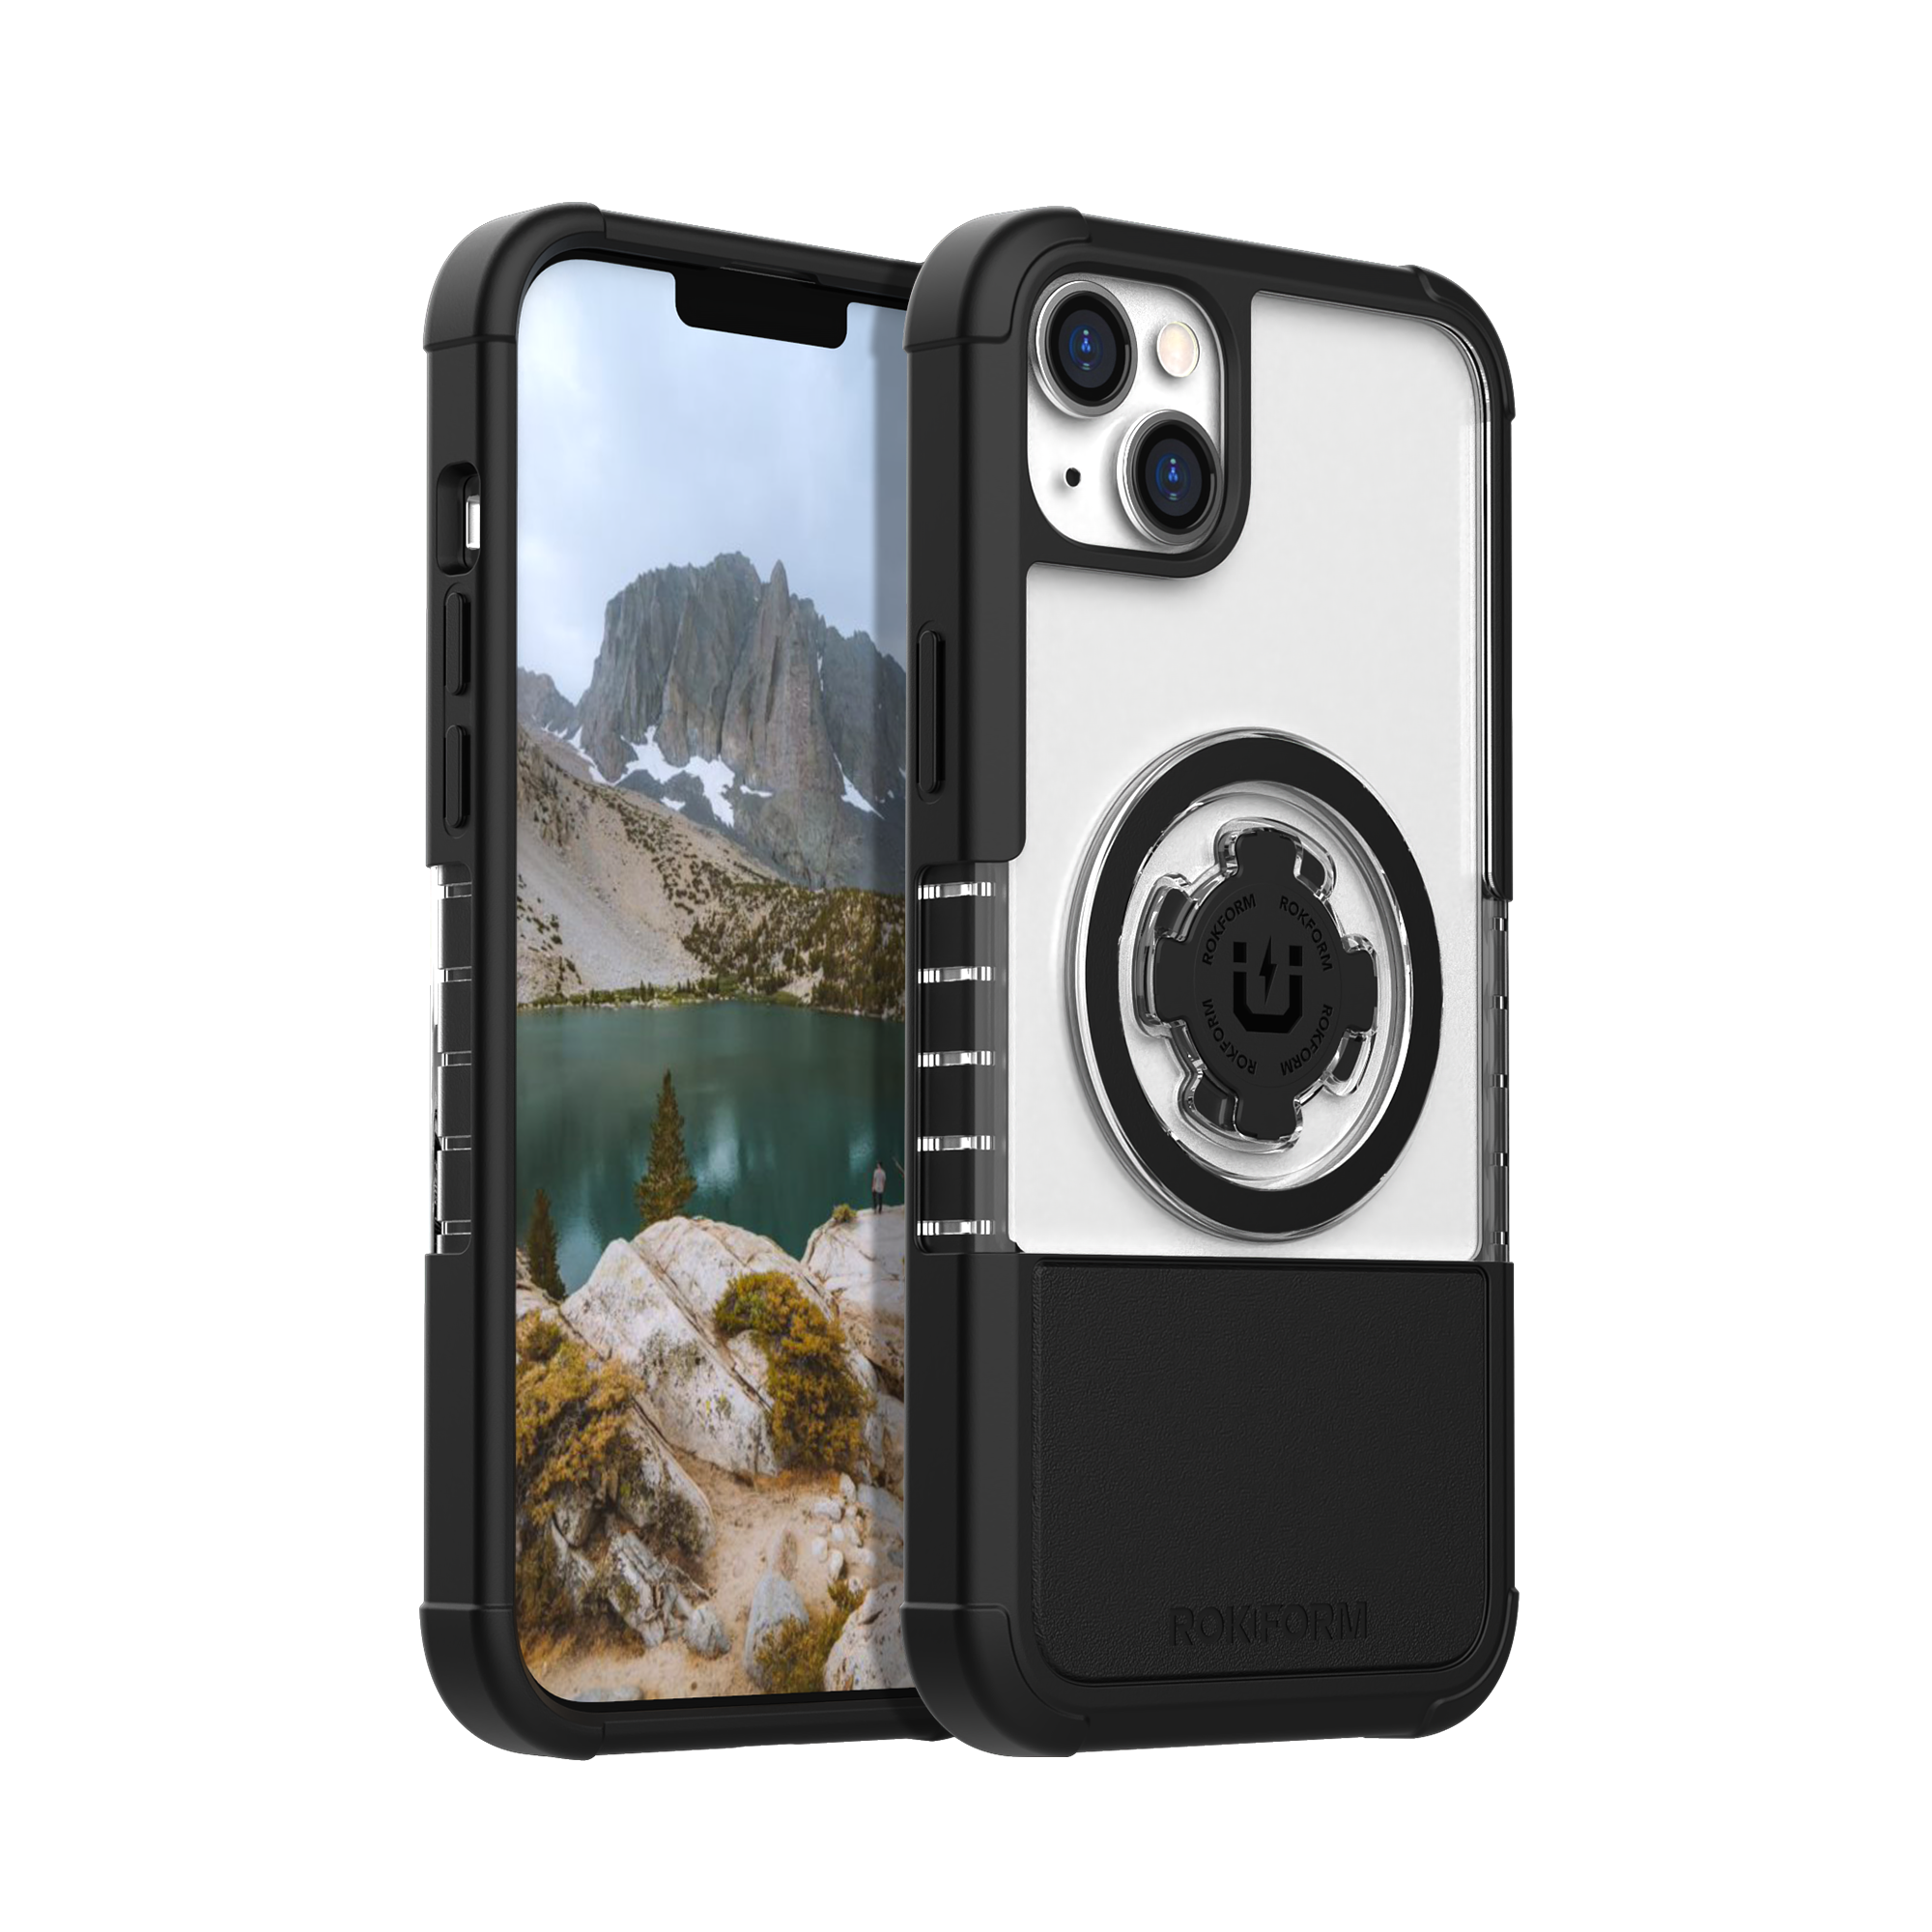 Rokform Crystal Case - iPhone 13 Pro Max